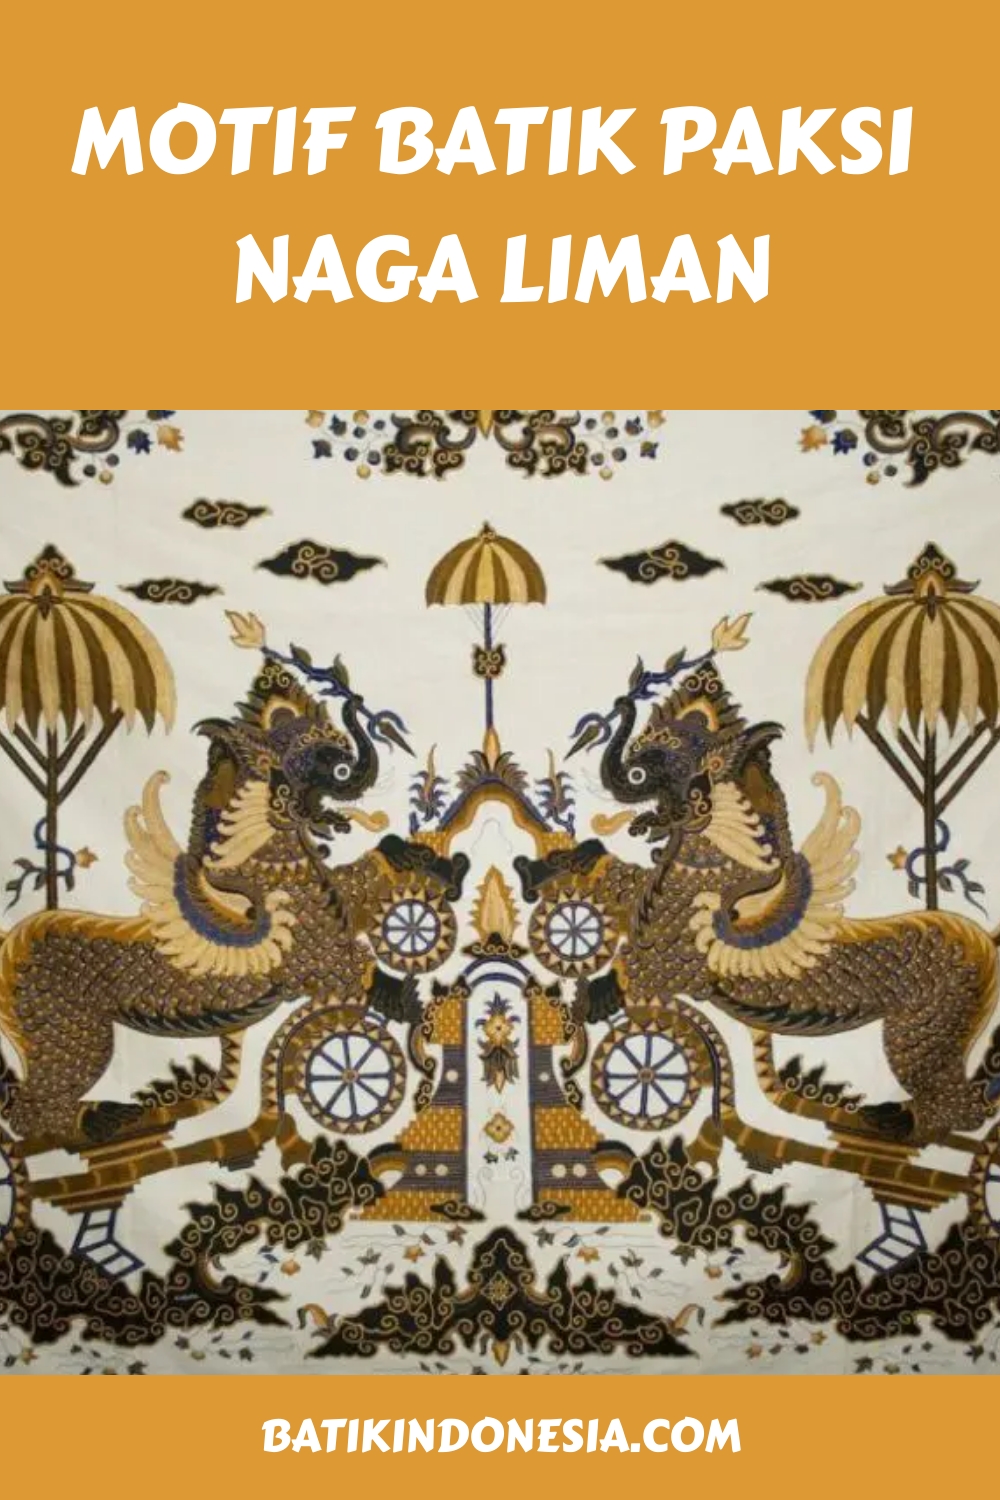 Motif Batik Paksi Naga Liman generated pin 1877